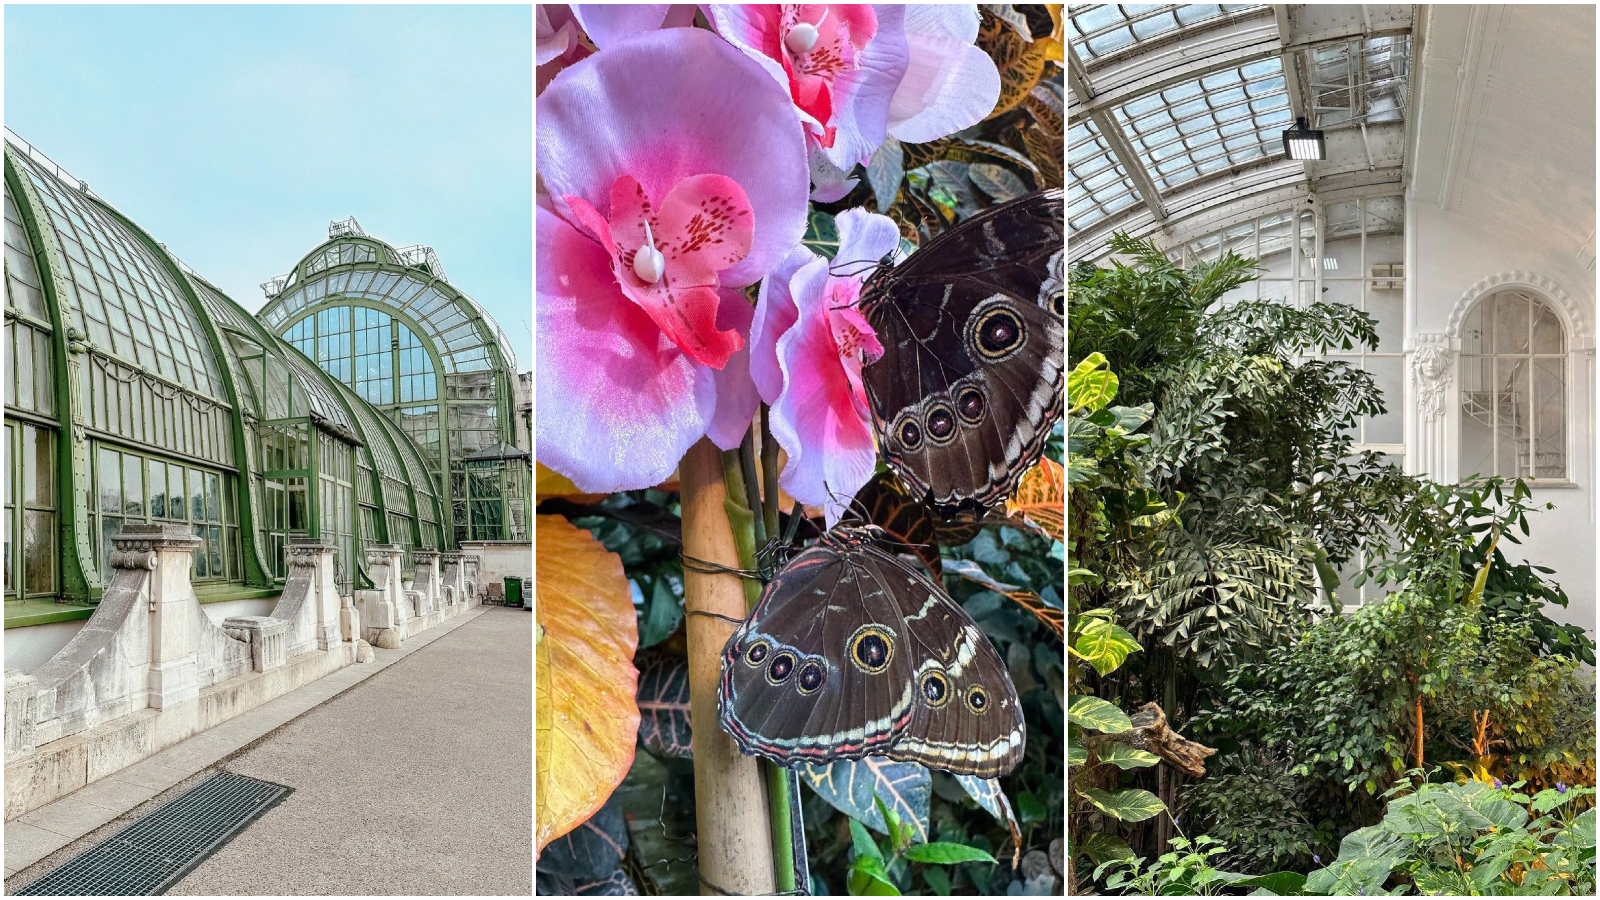 Ako planirate put u Beč, na must-visit listu dodajte Kuću leptira